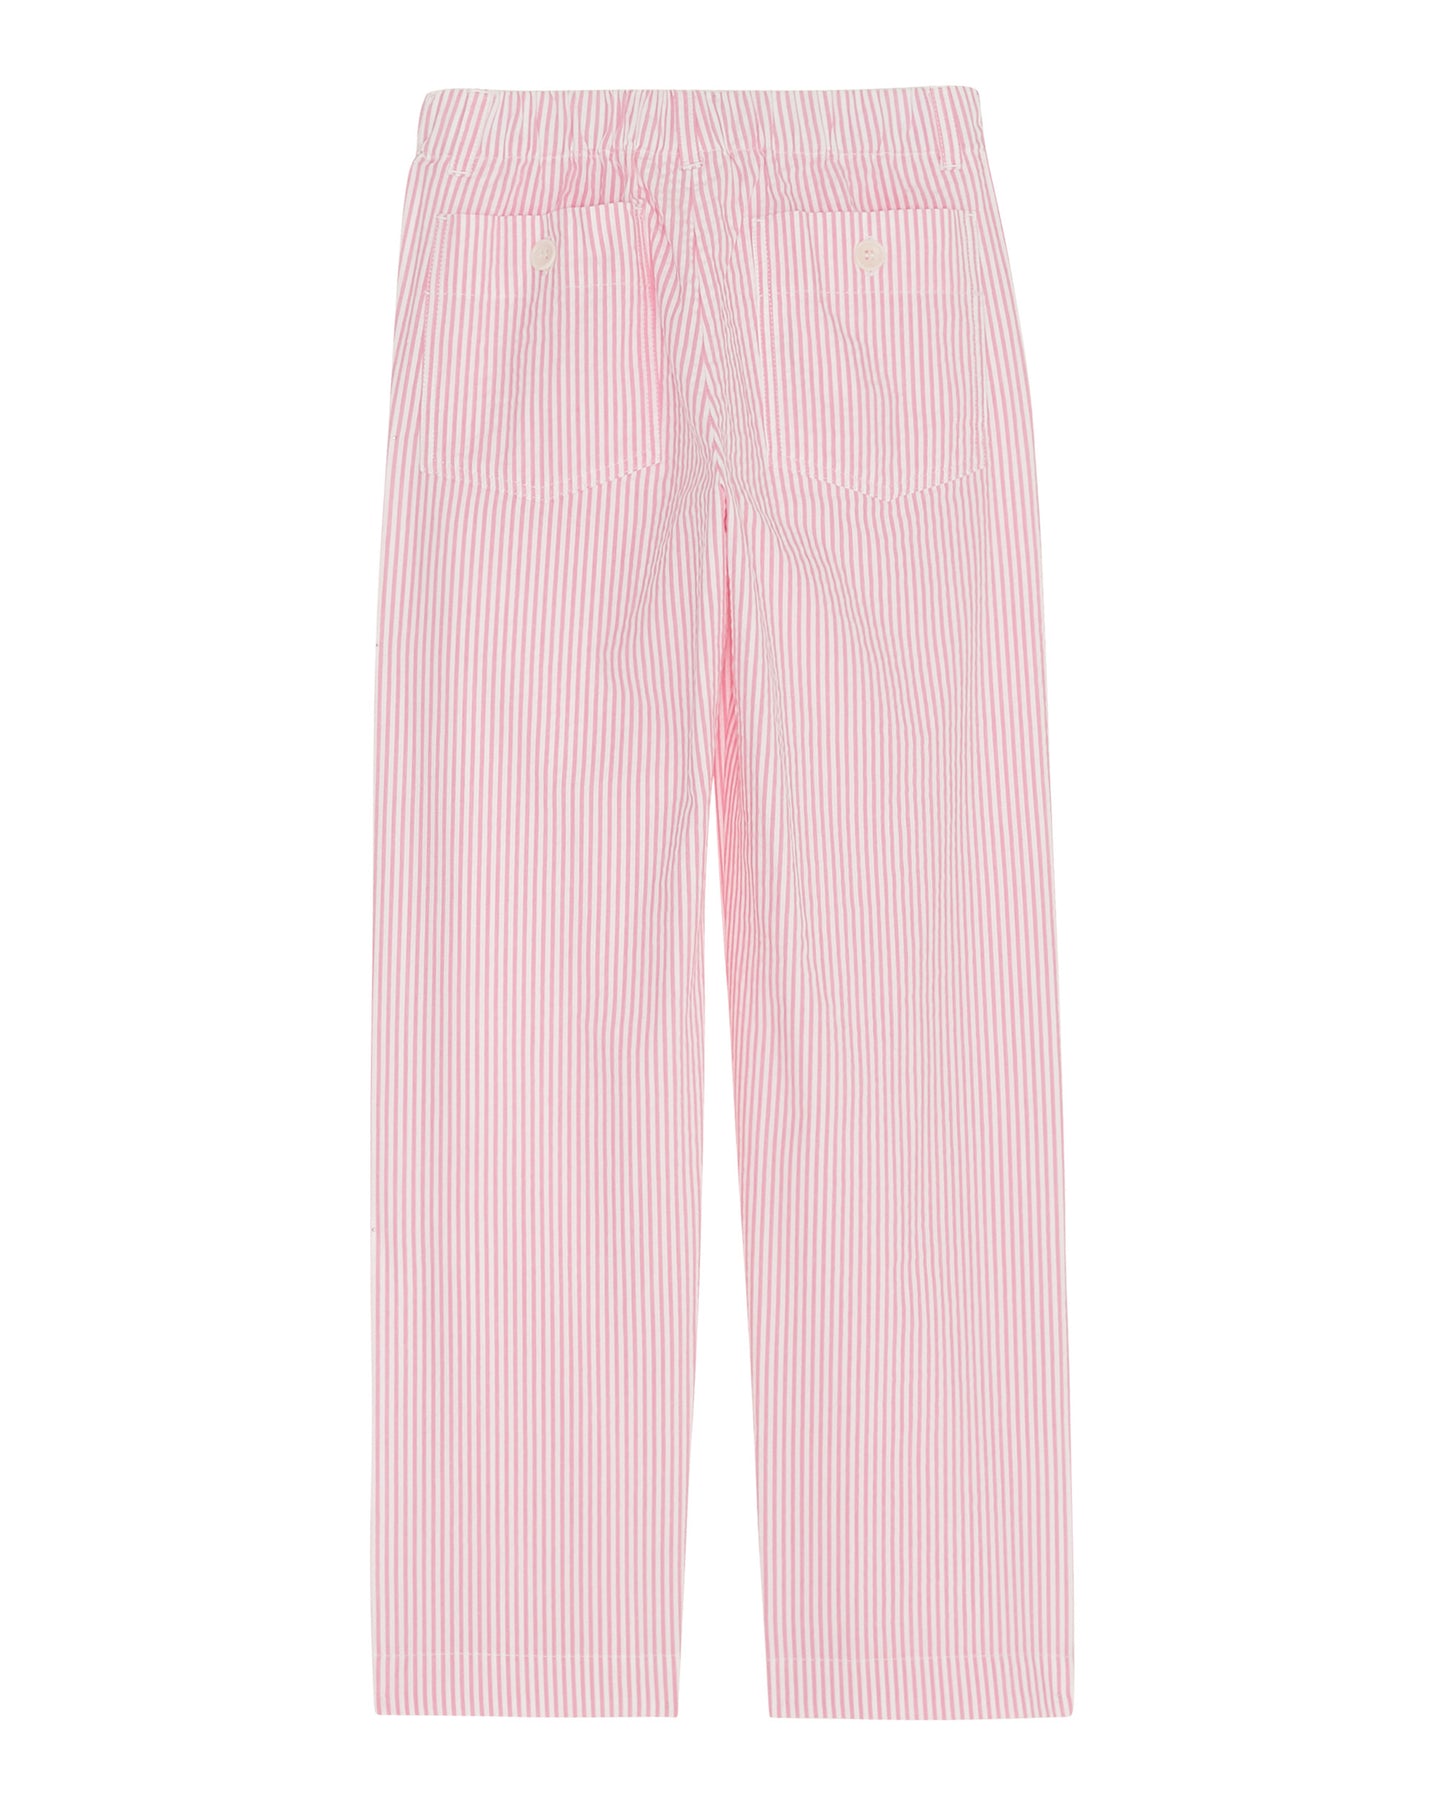 Pantalon Fille en seersucker rayé Rose Pharell BBPDB614-02